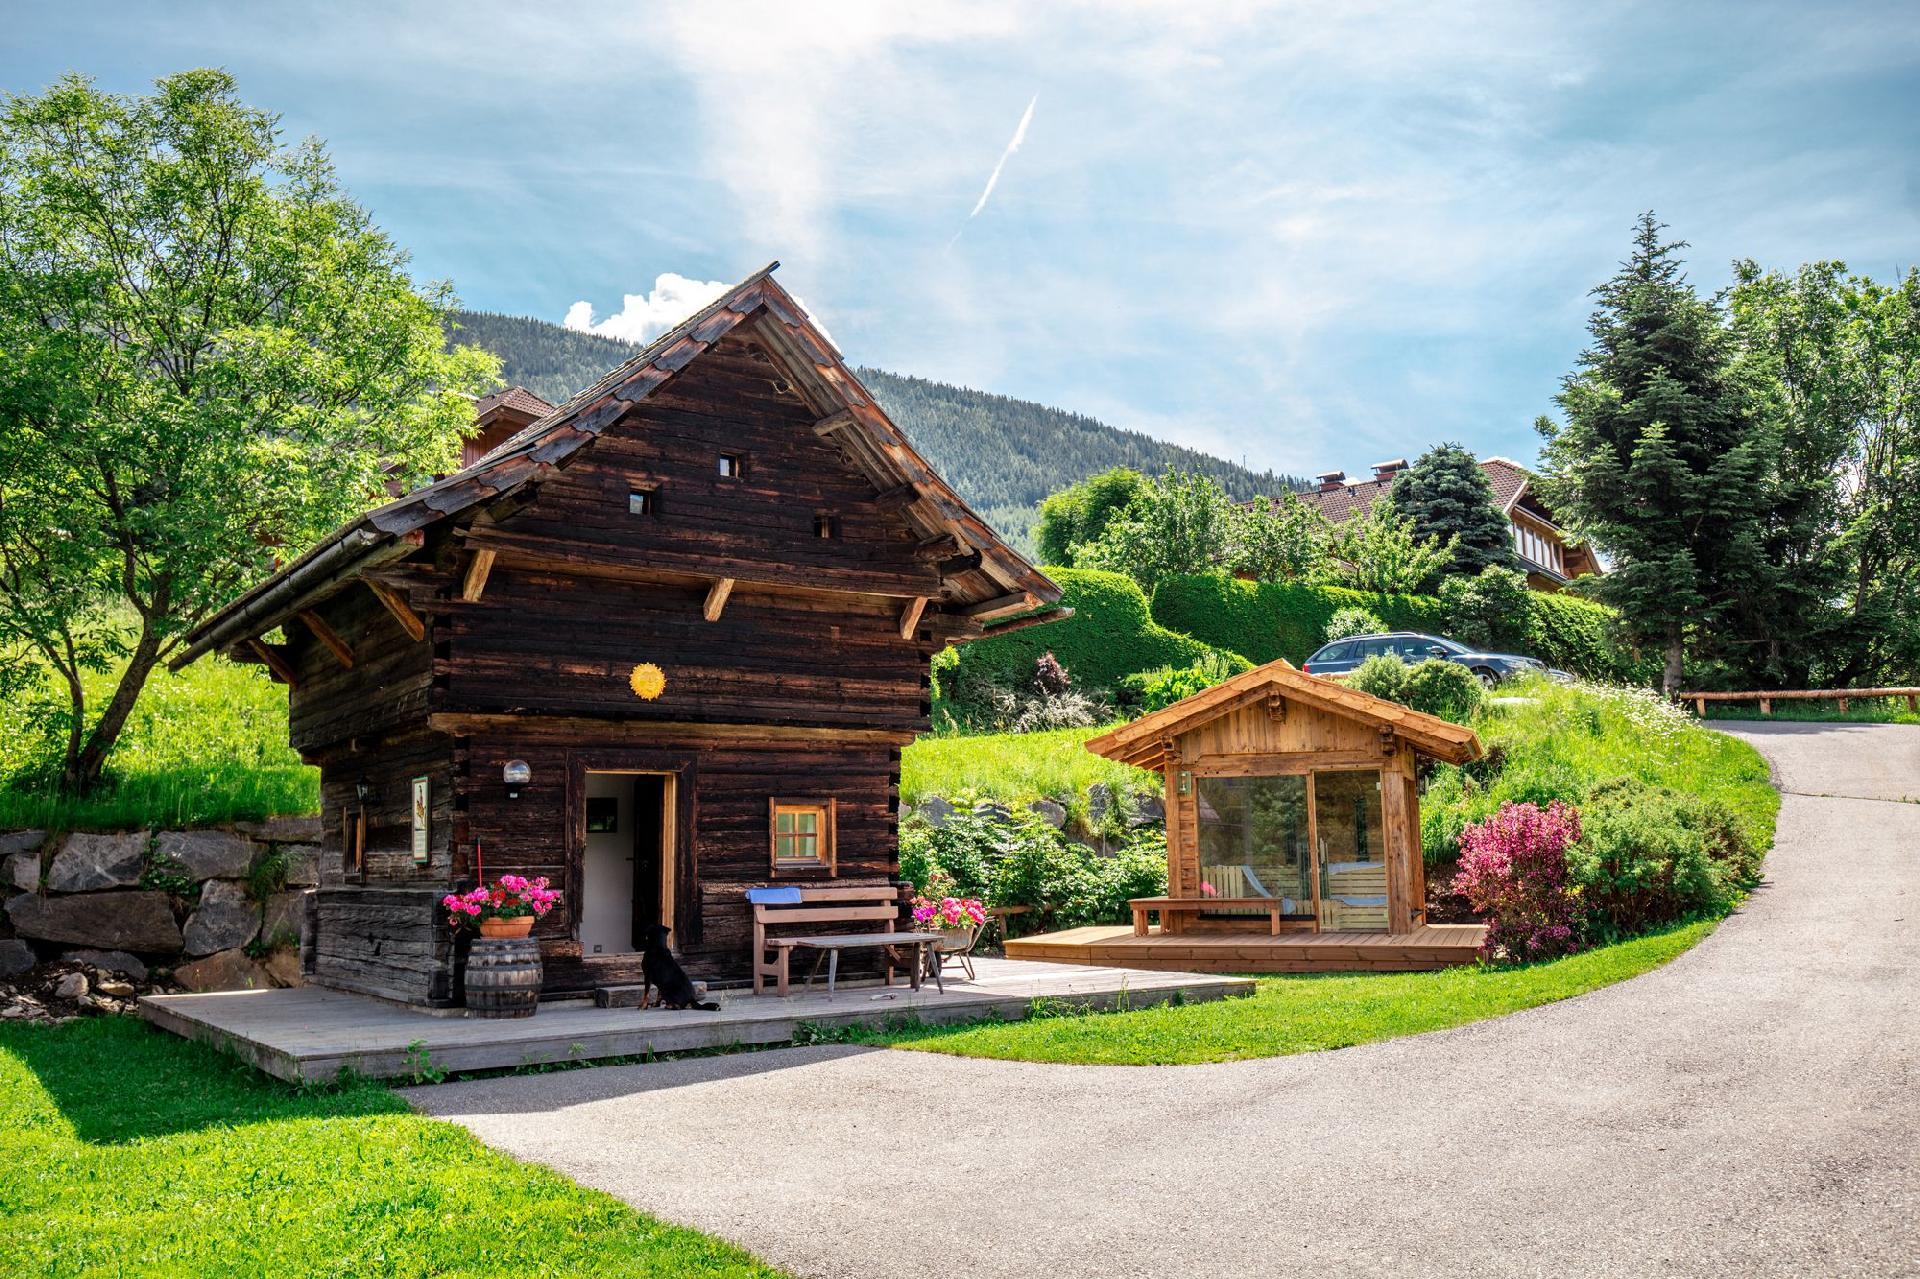 Ferienhaus in Aschbach mit Grill, Terrasse und Gar  in Österreich